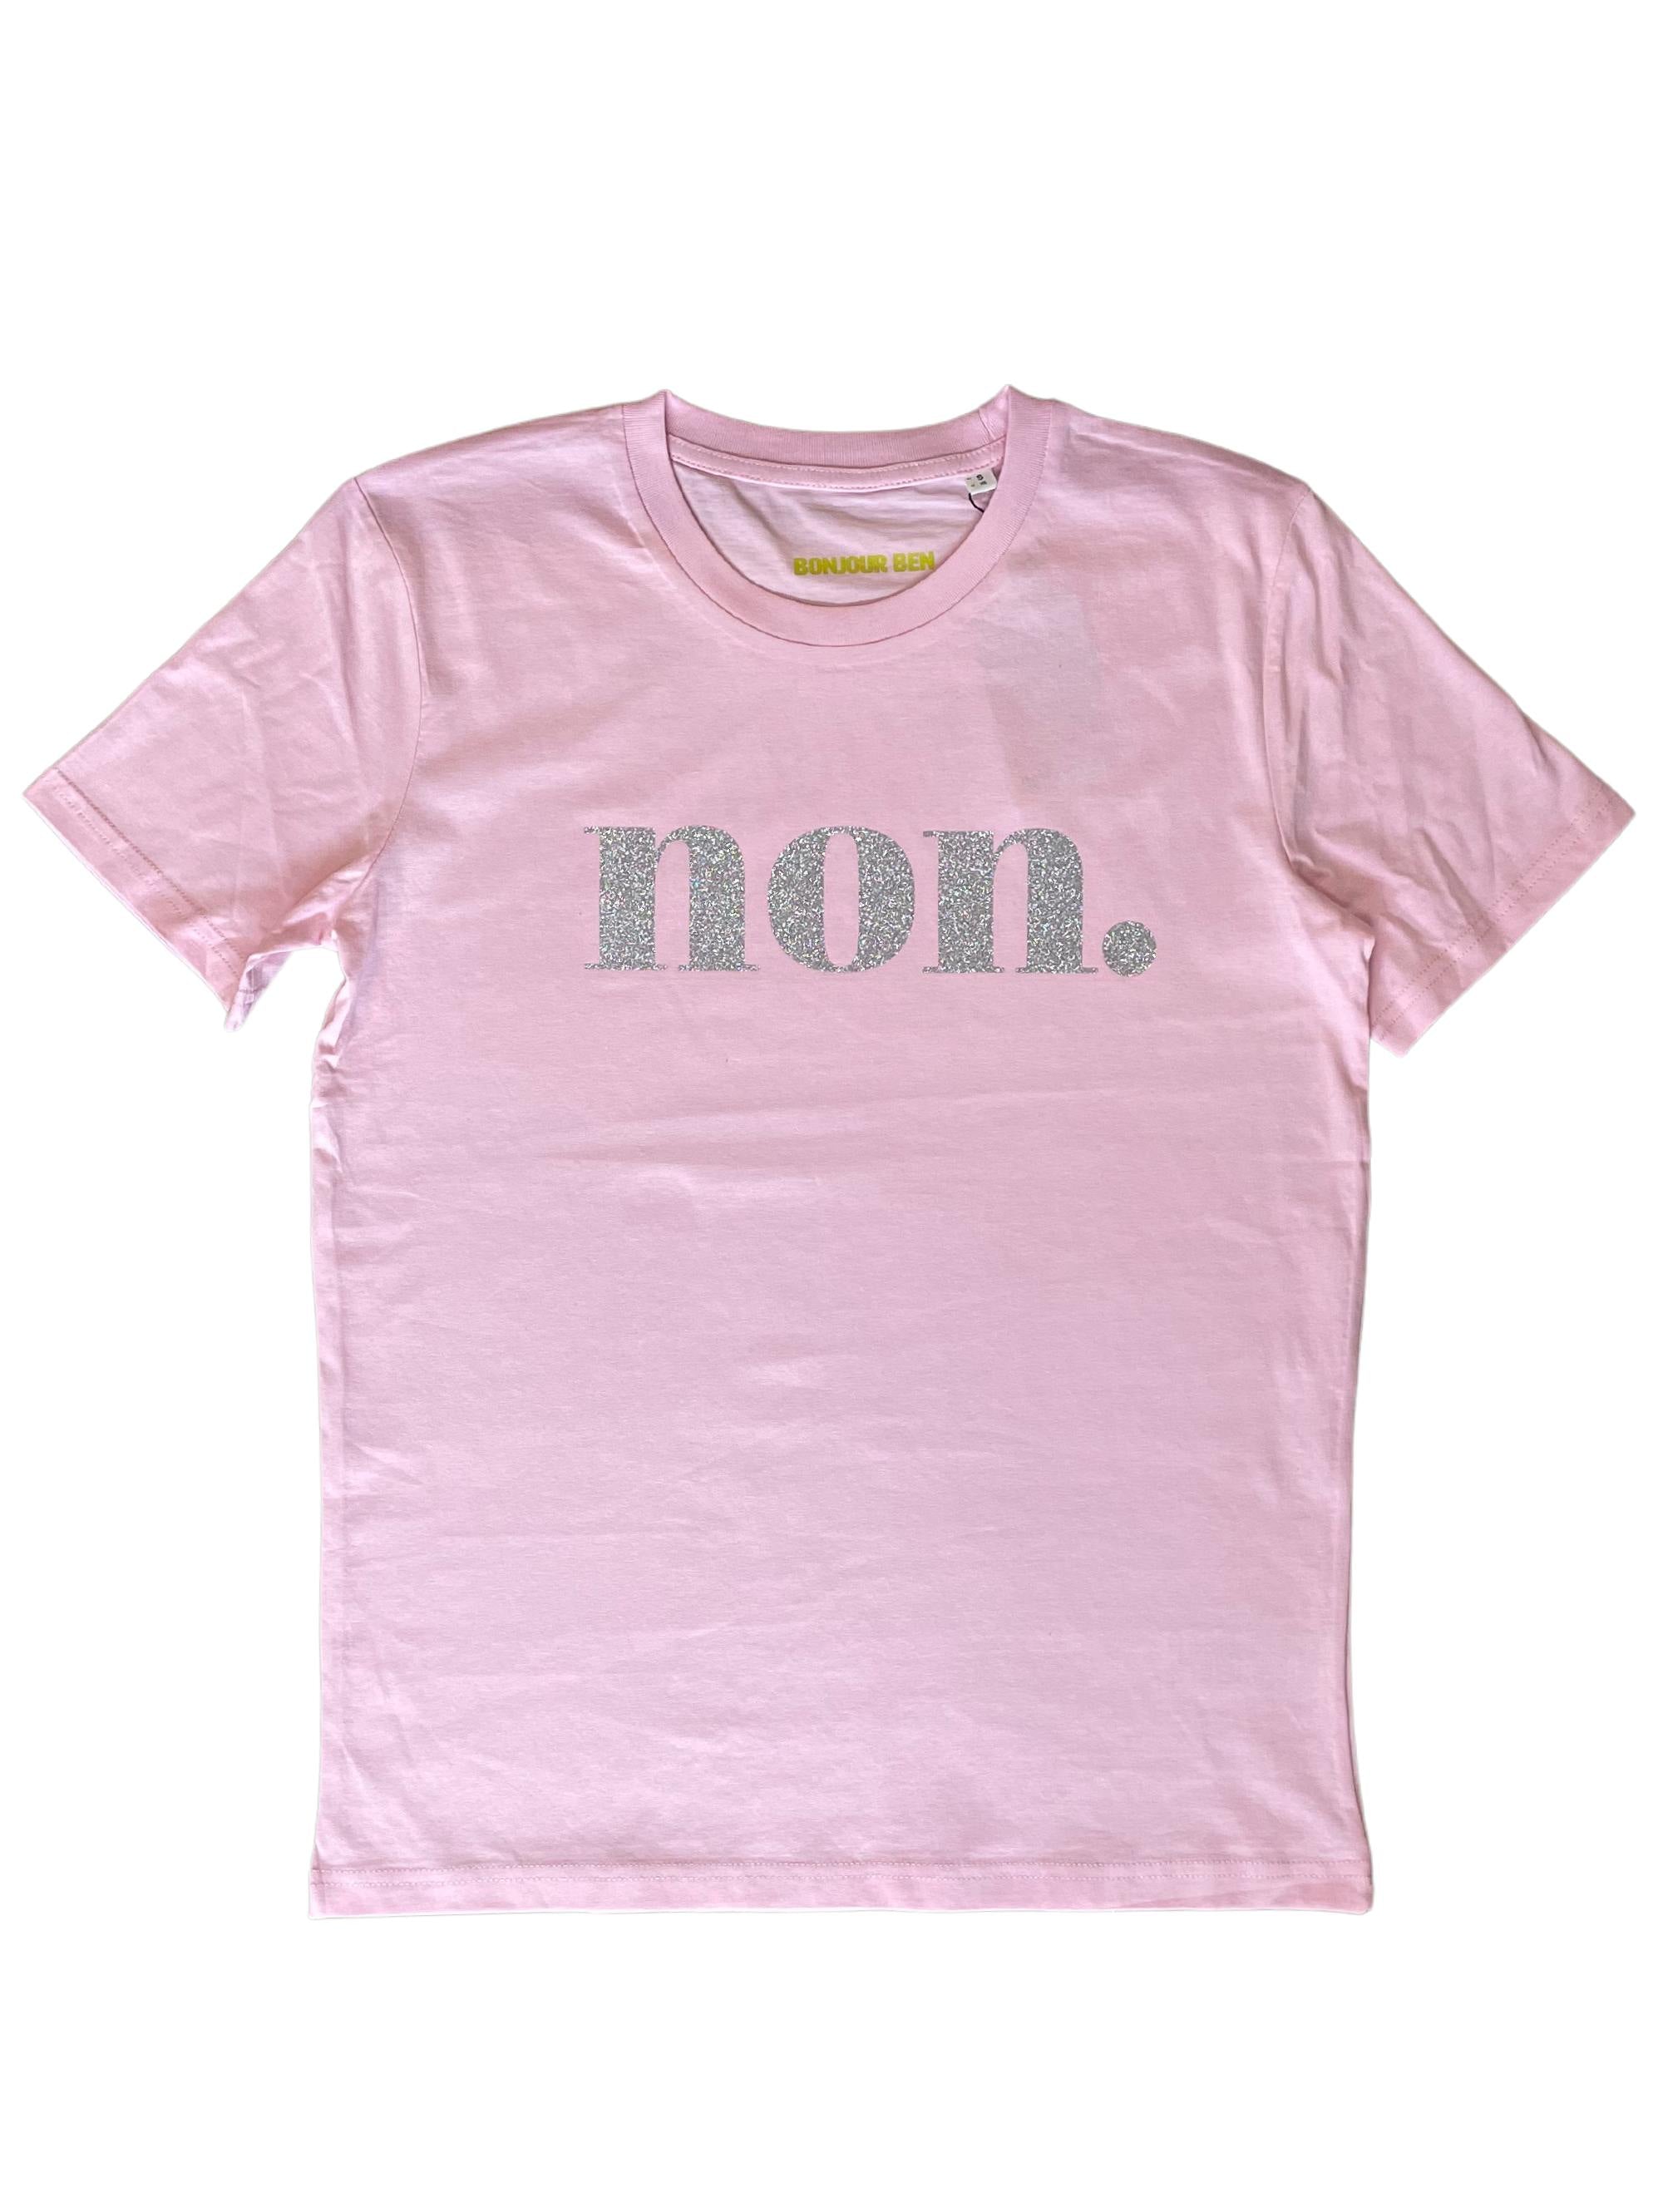 Non. T-Shirt - Rosa/Silber Glitzer